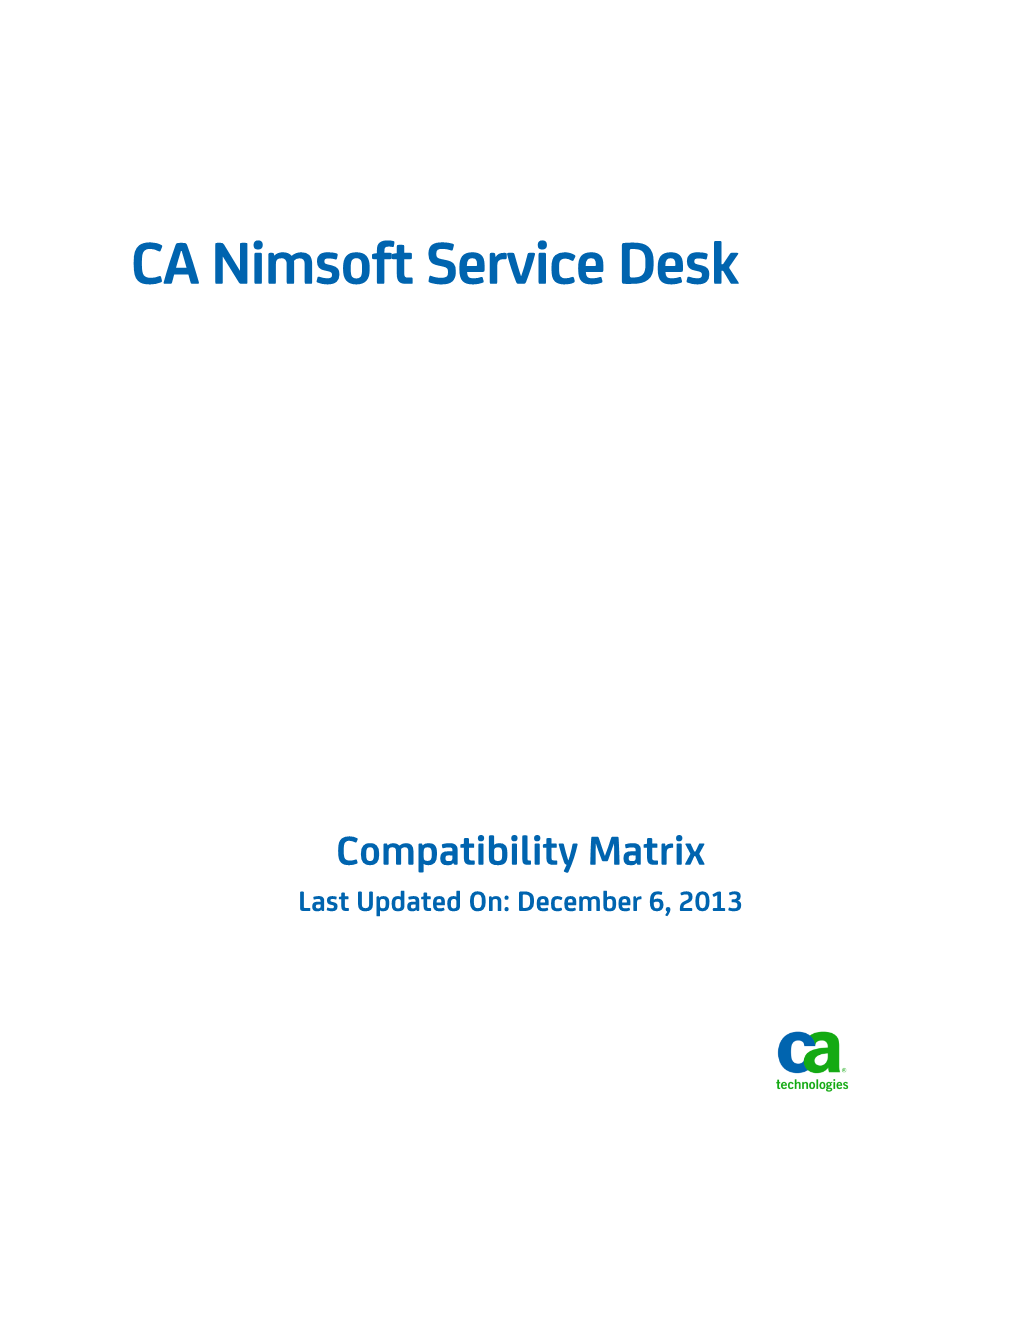 CA Nimsoft Service Desk Compatibility Matrix